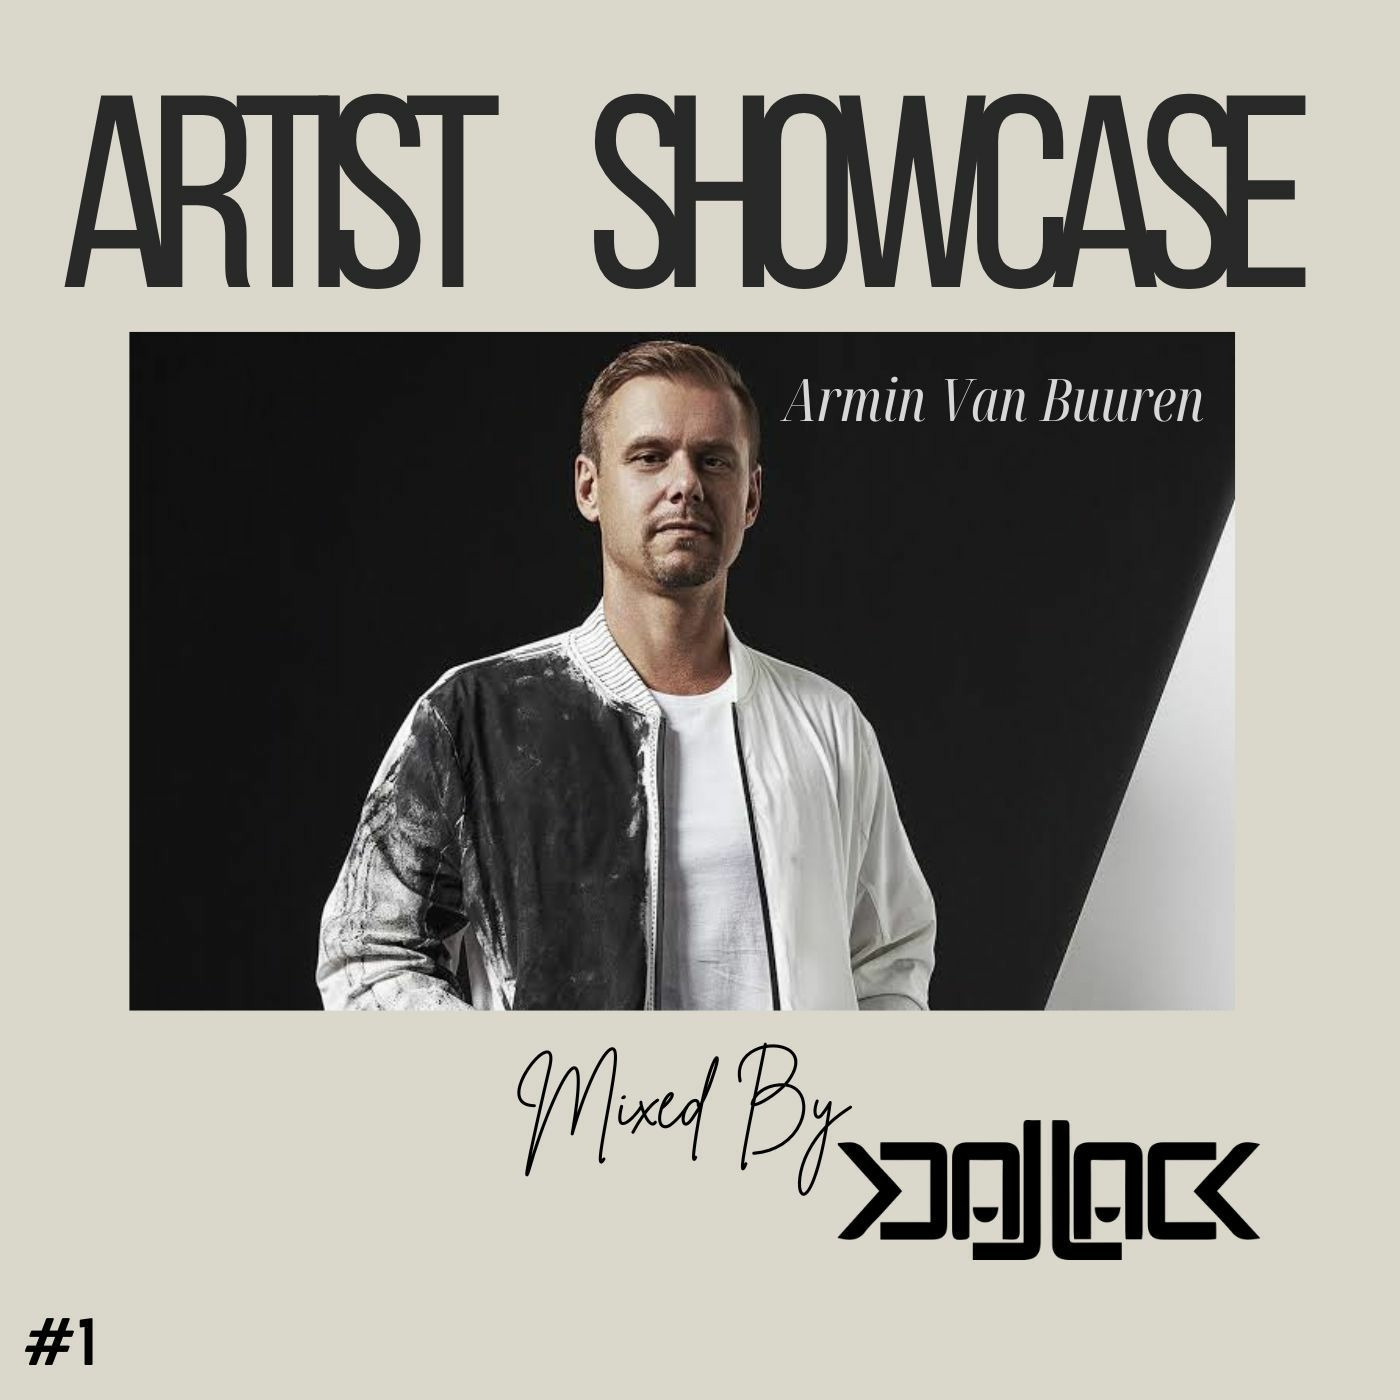 Artist Showcase #1 - Armin Van Buuren | Part 1